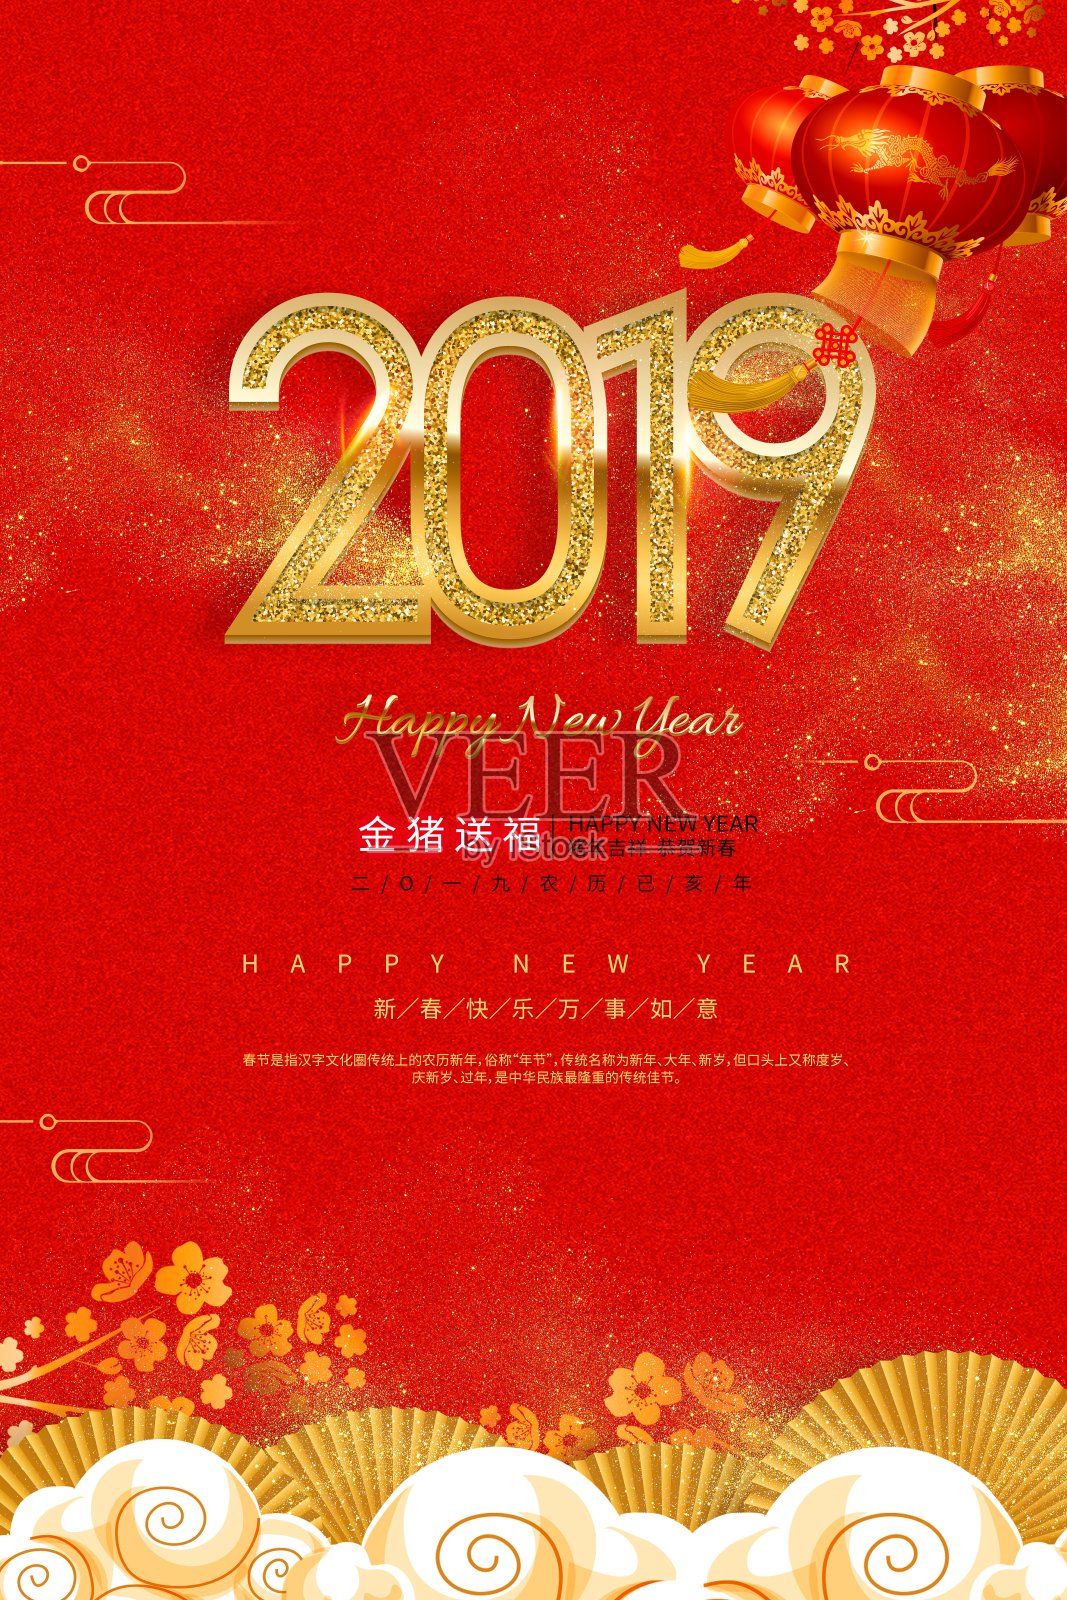 中国风2019猪年大吉节日海报设计模板素材